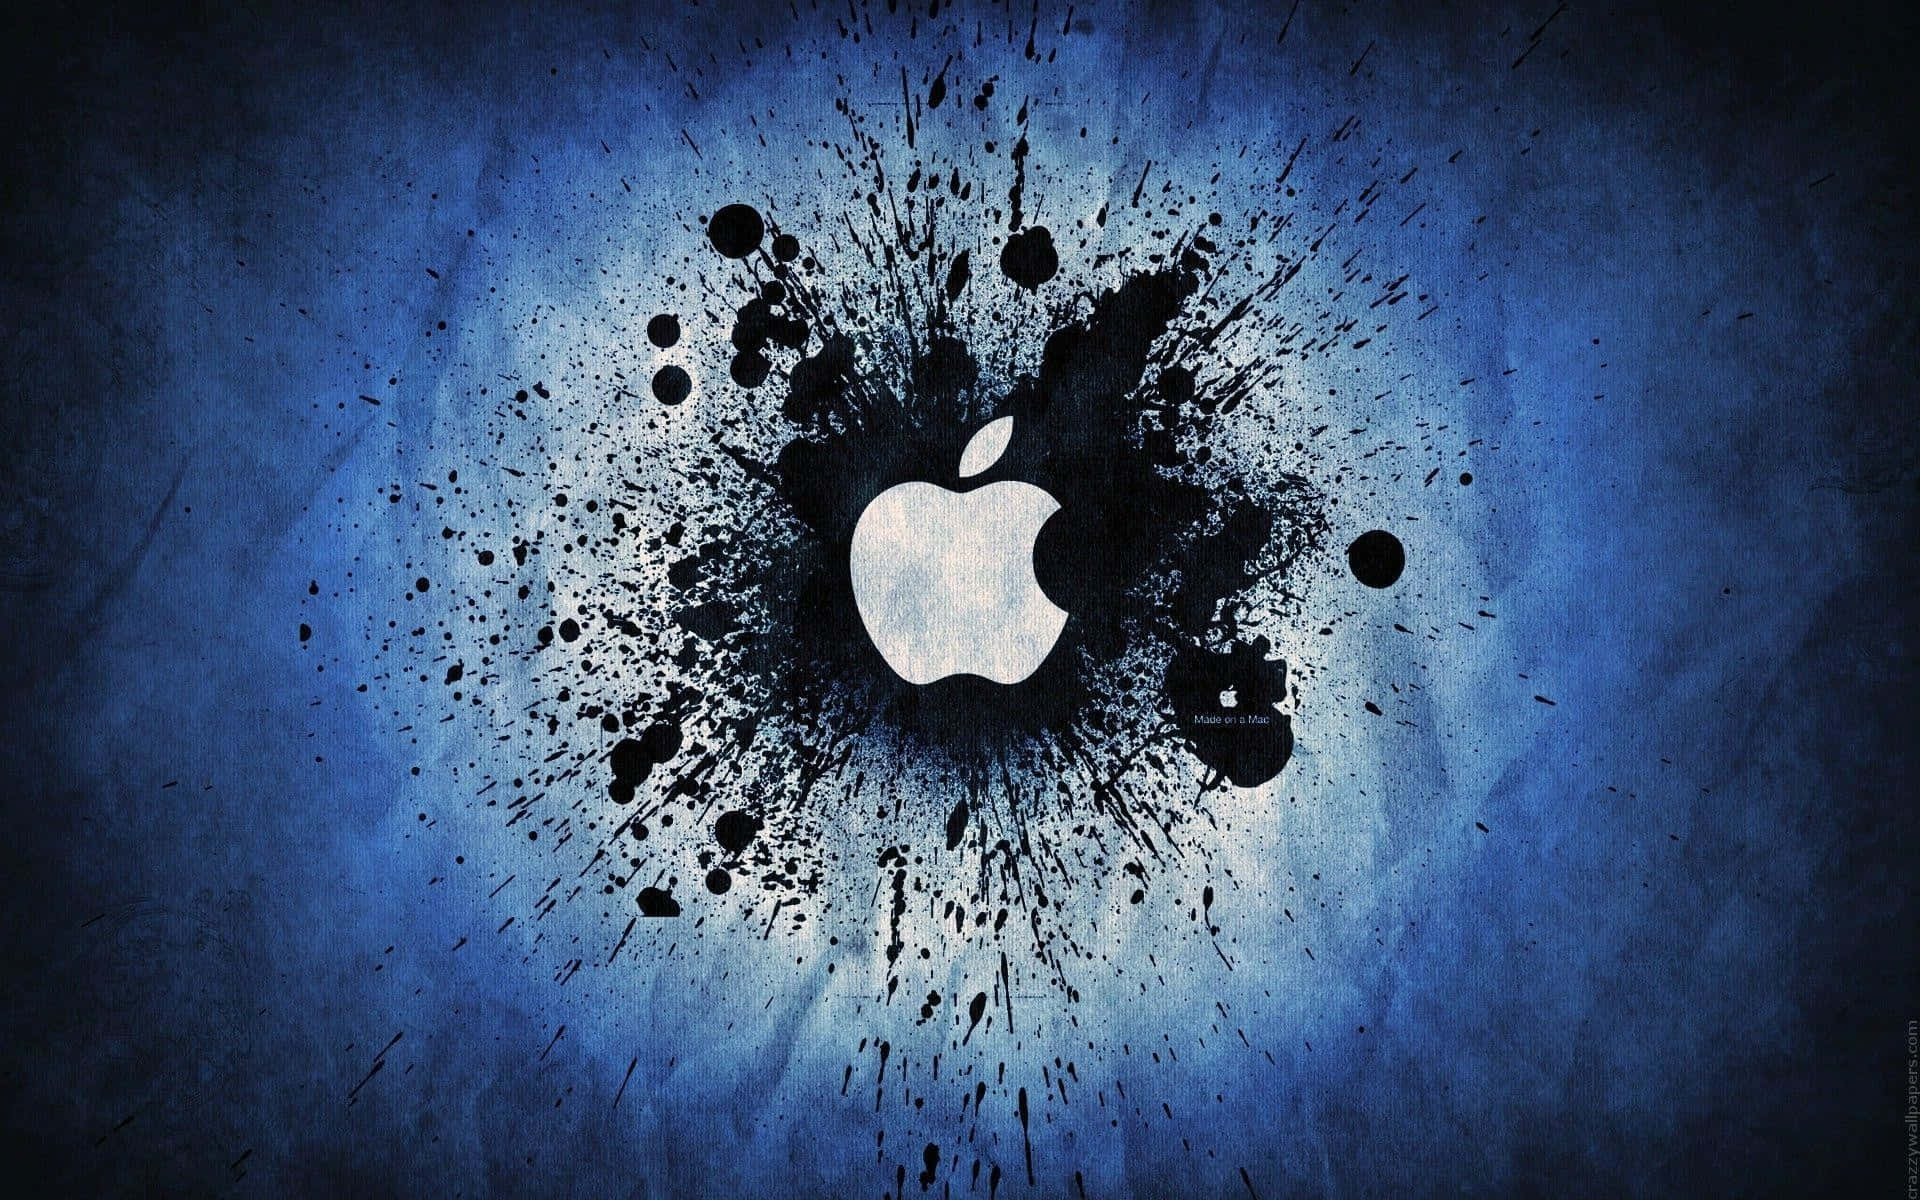 Cool Apple Black Splatter Paint Wallpaper